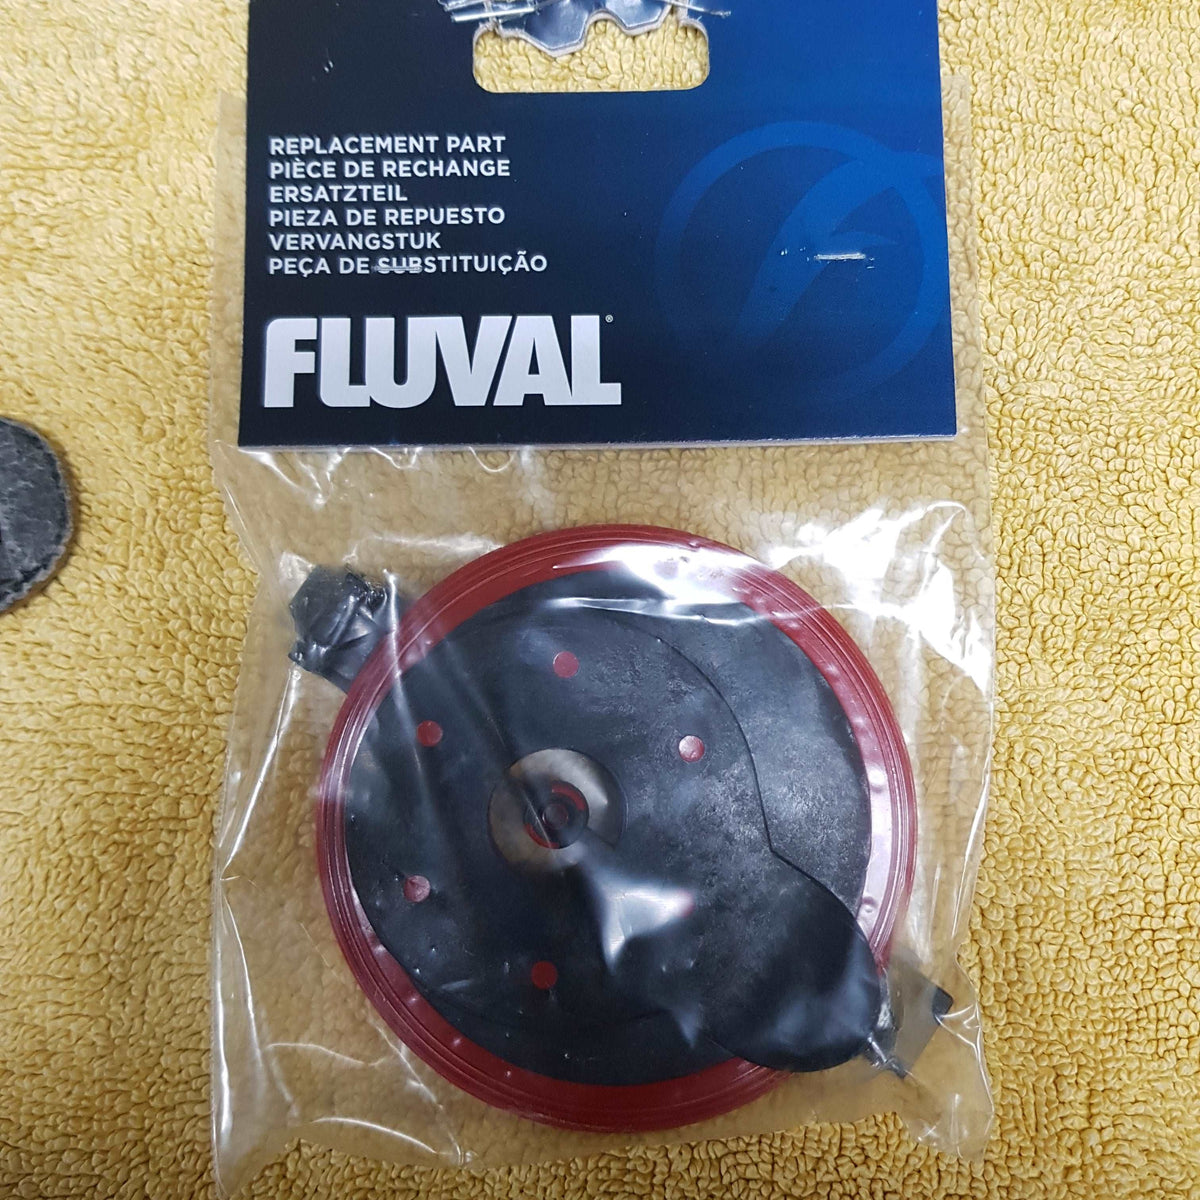 Fluval 306/406 impeller cover